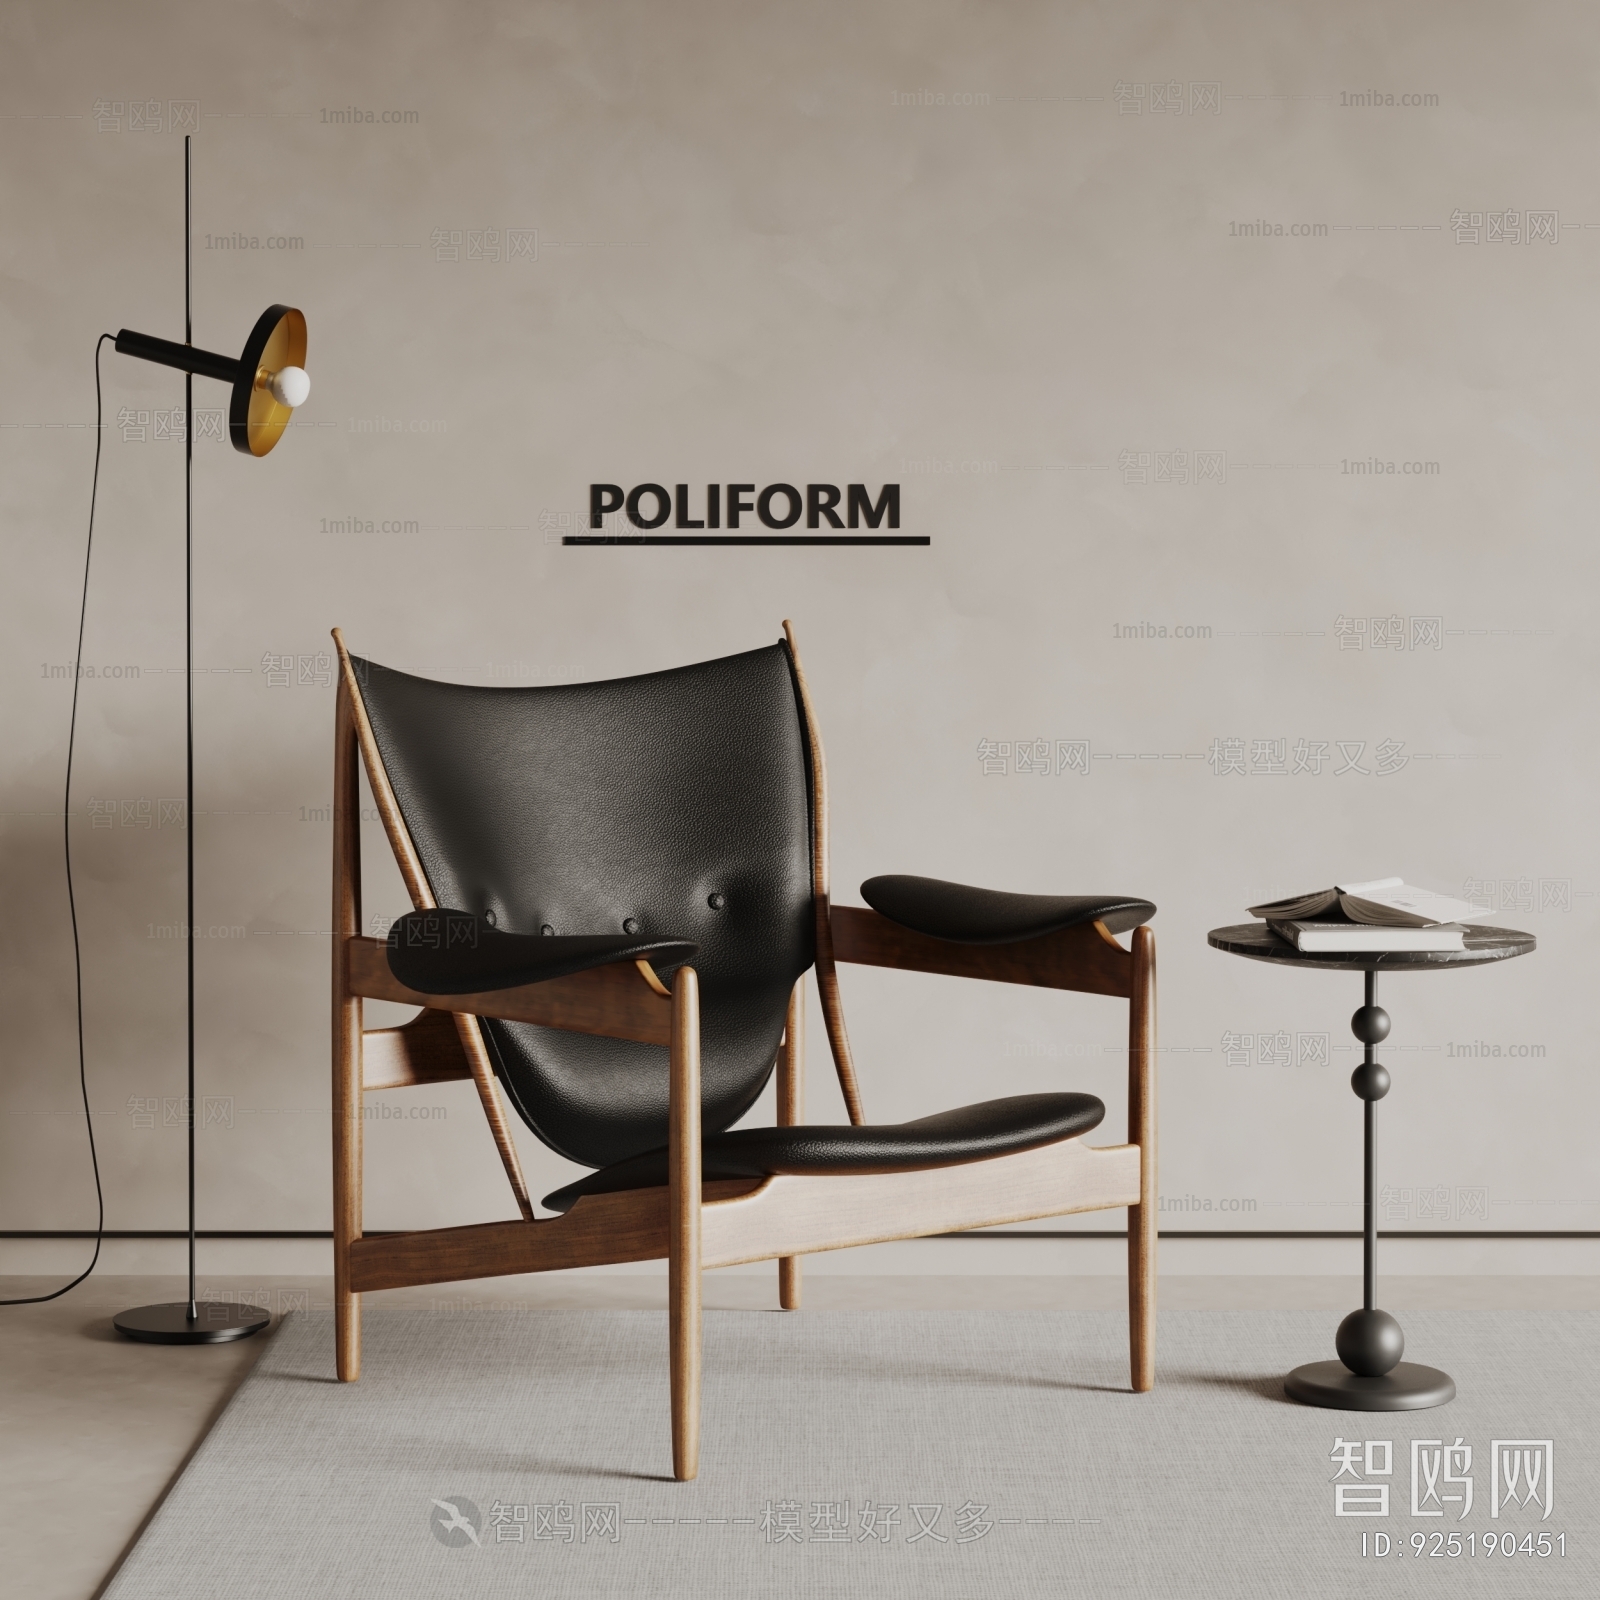 poliform现代休闲椅